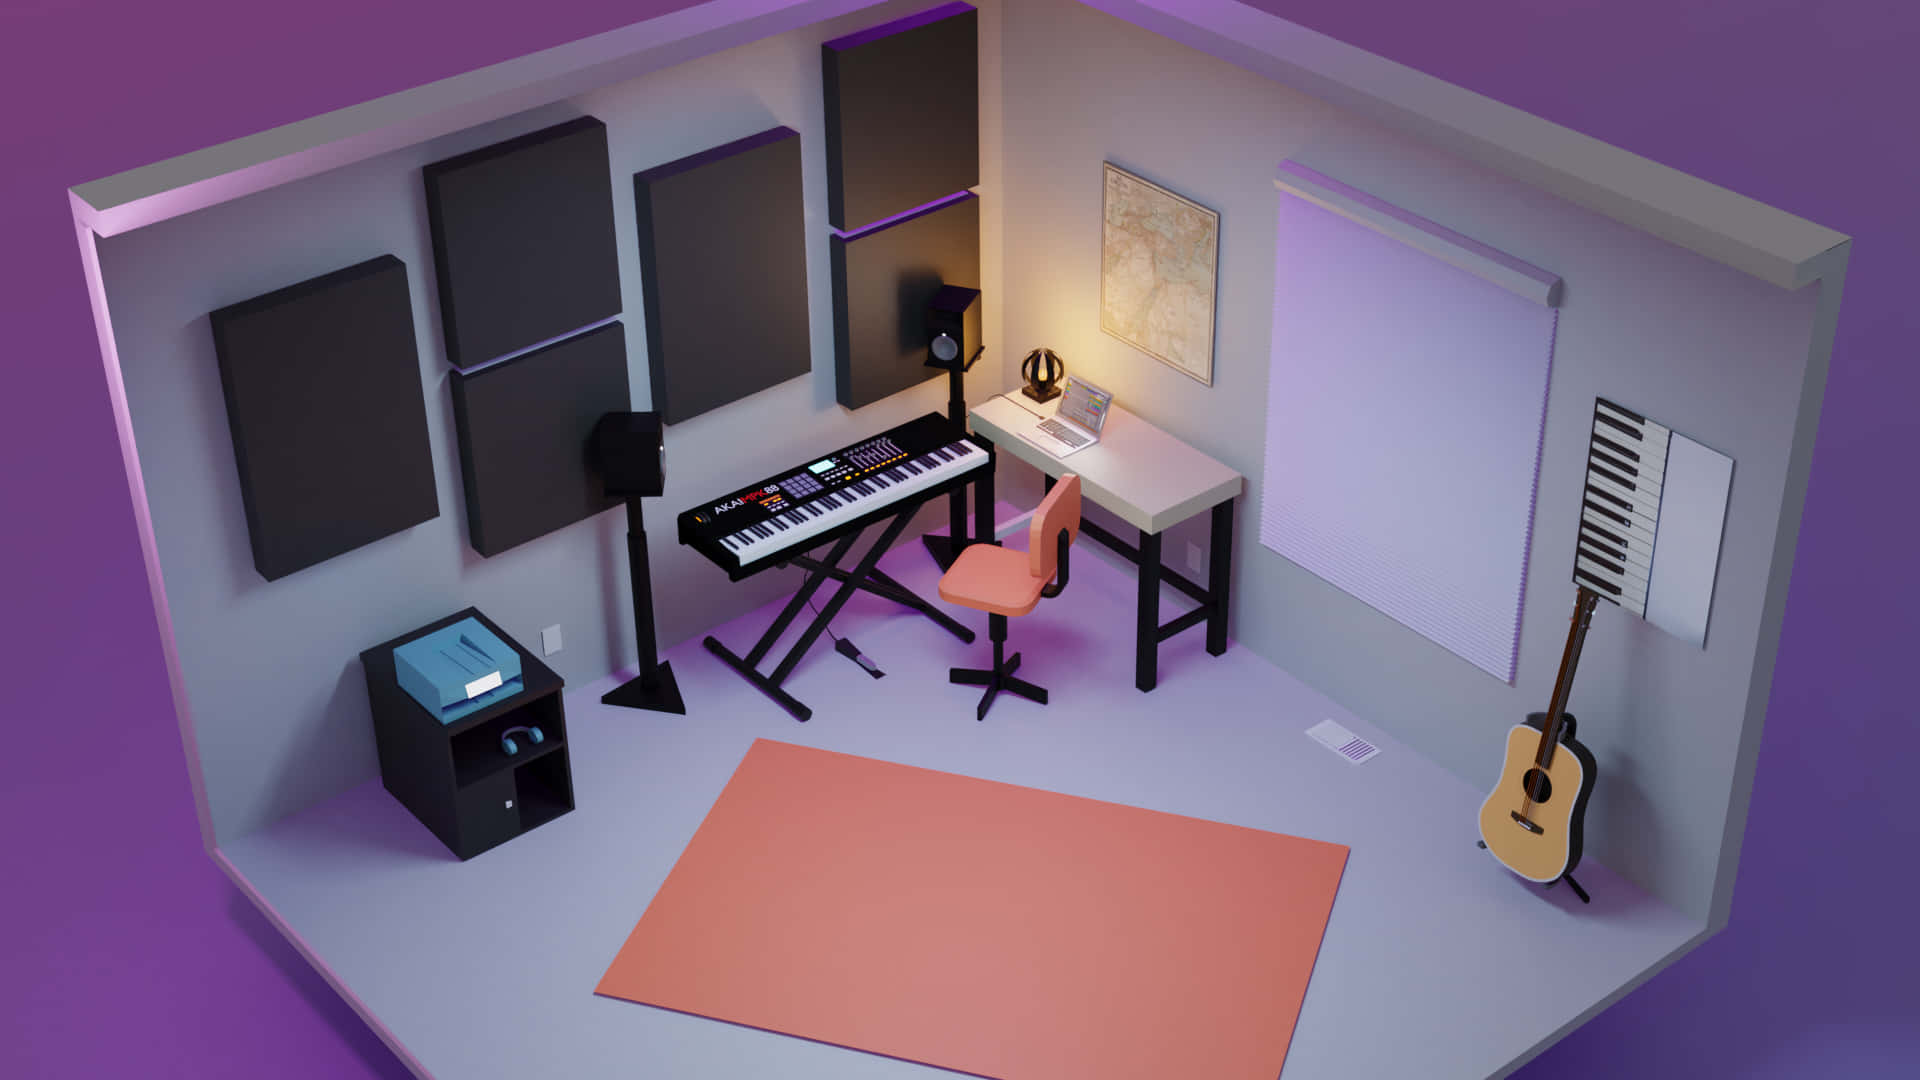 Imagende Una Sala De Música En 3d